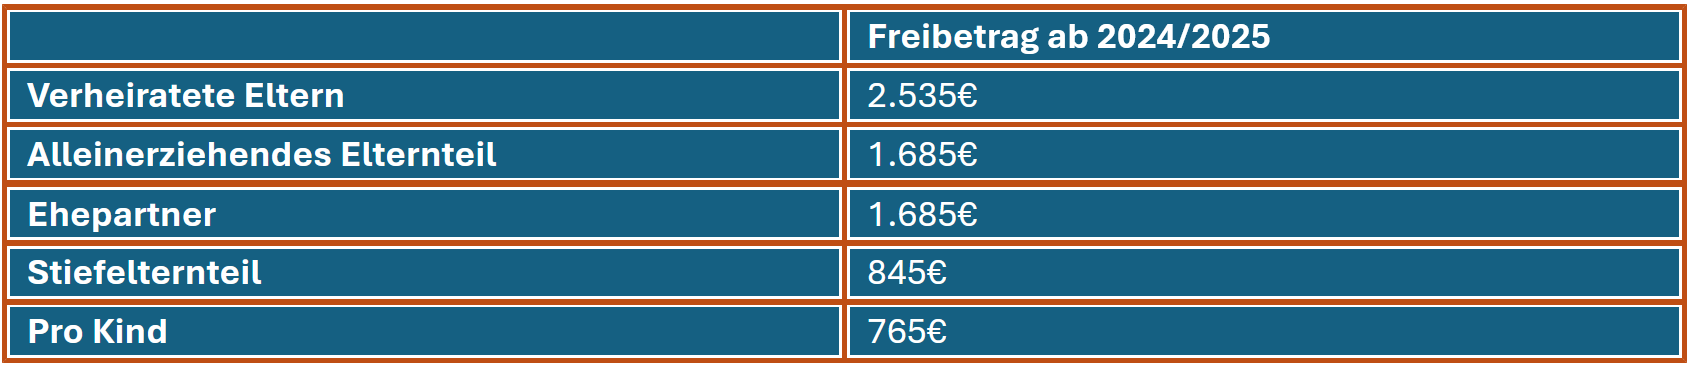 Eine Tabelle, die einen Überblick über die verschiedenen Freibeträge beim Bafög gibt. 